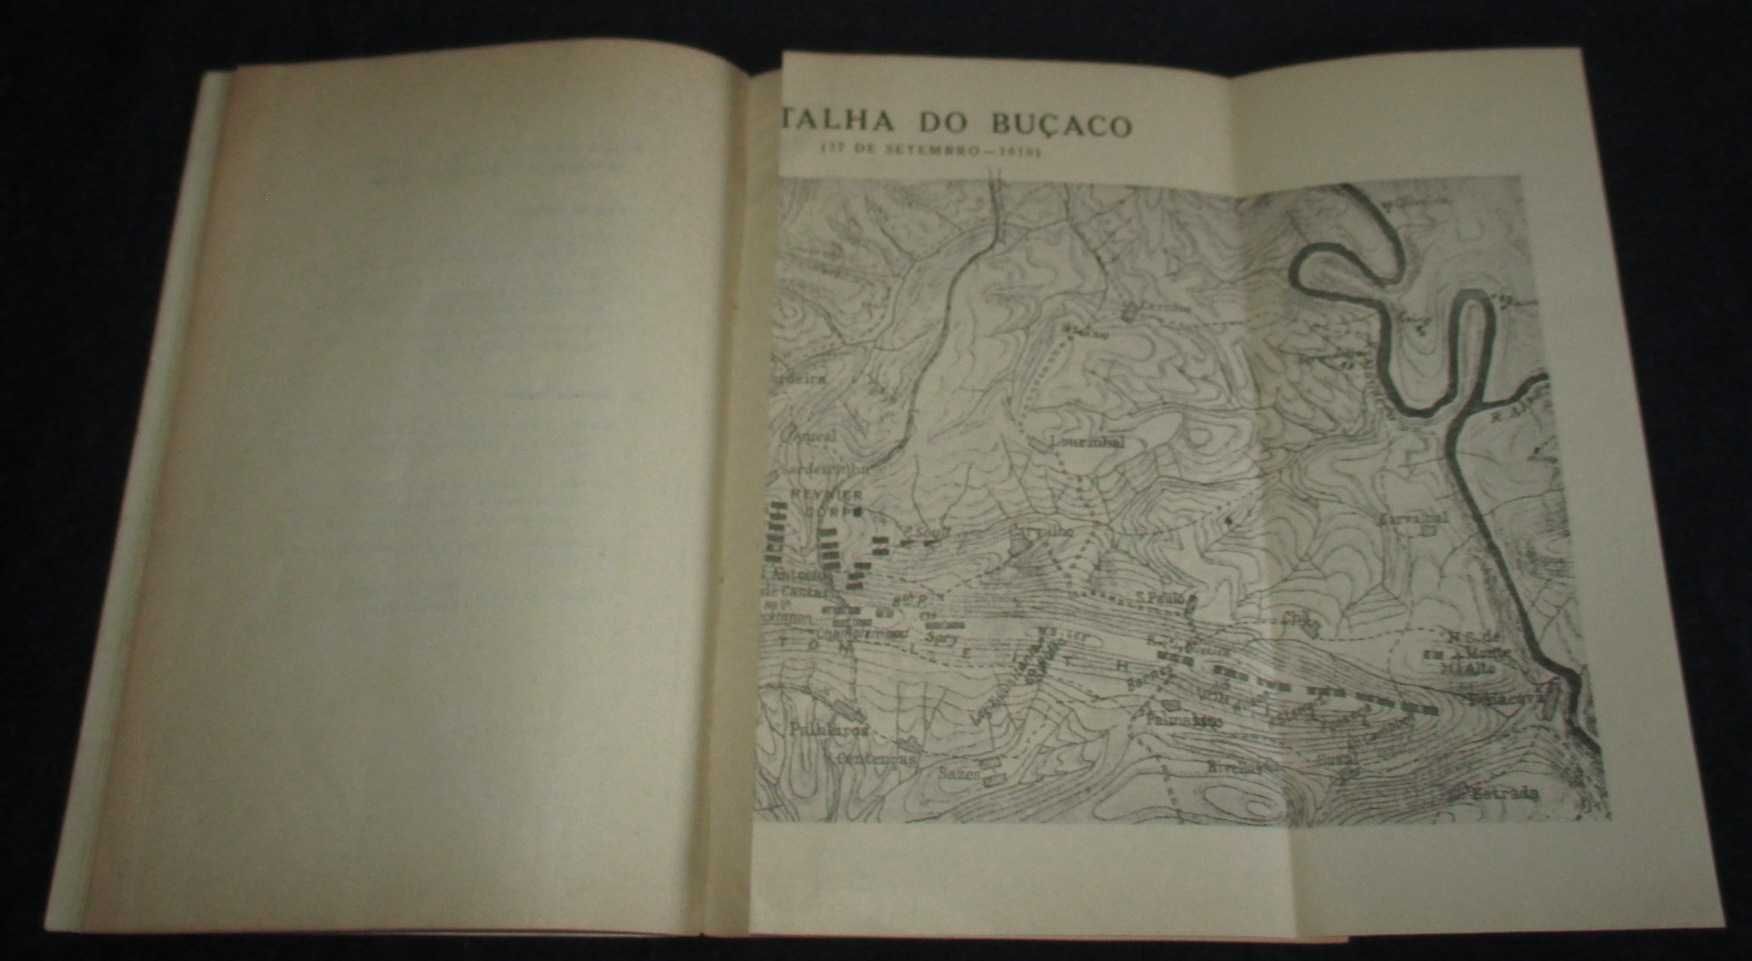 Livro Batalha do Buçaco 27 de Setembro de 1810